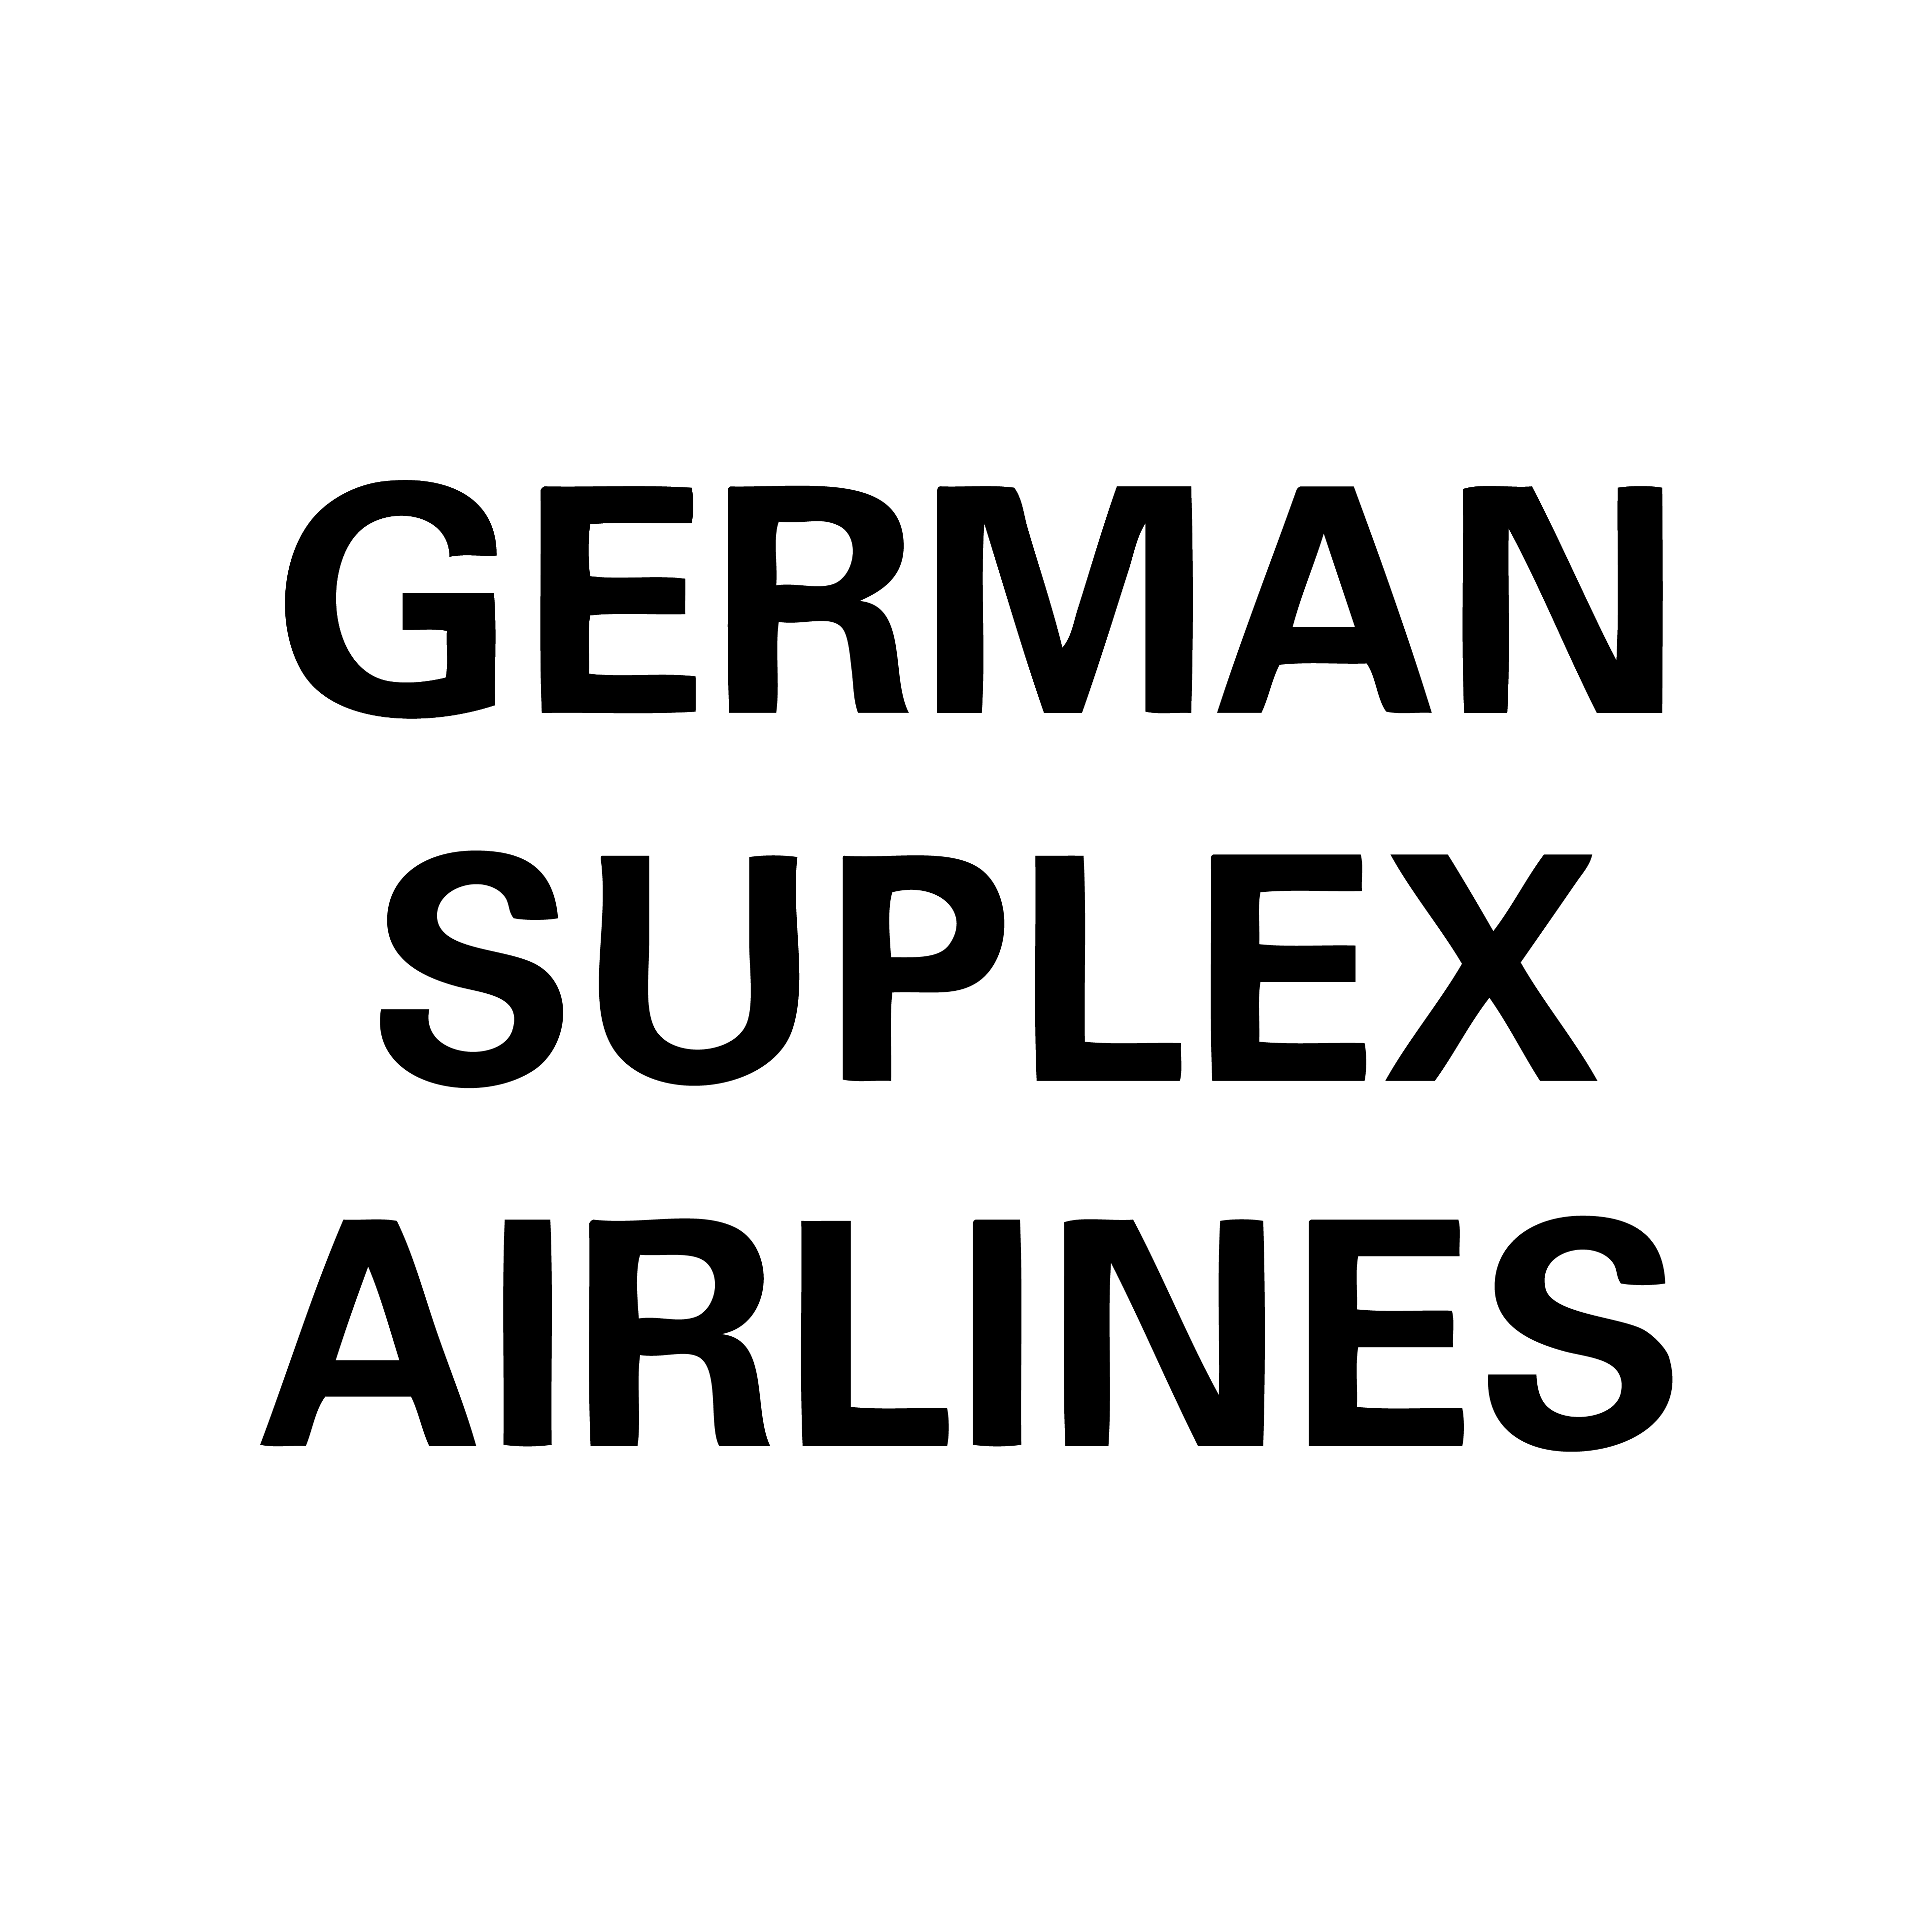 GERMAN SUPLEX AIRLINES